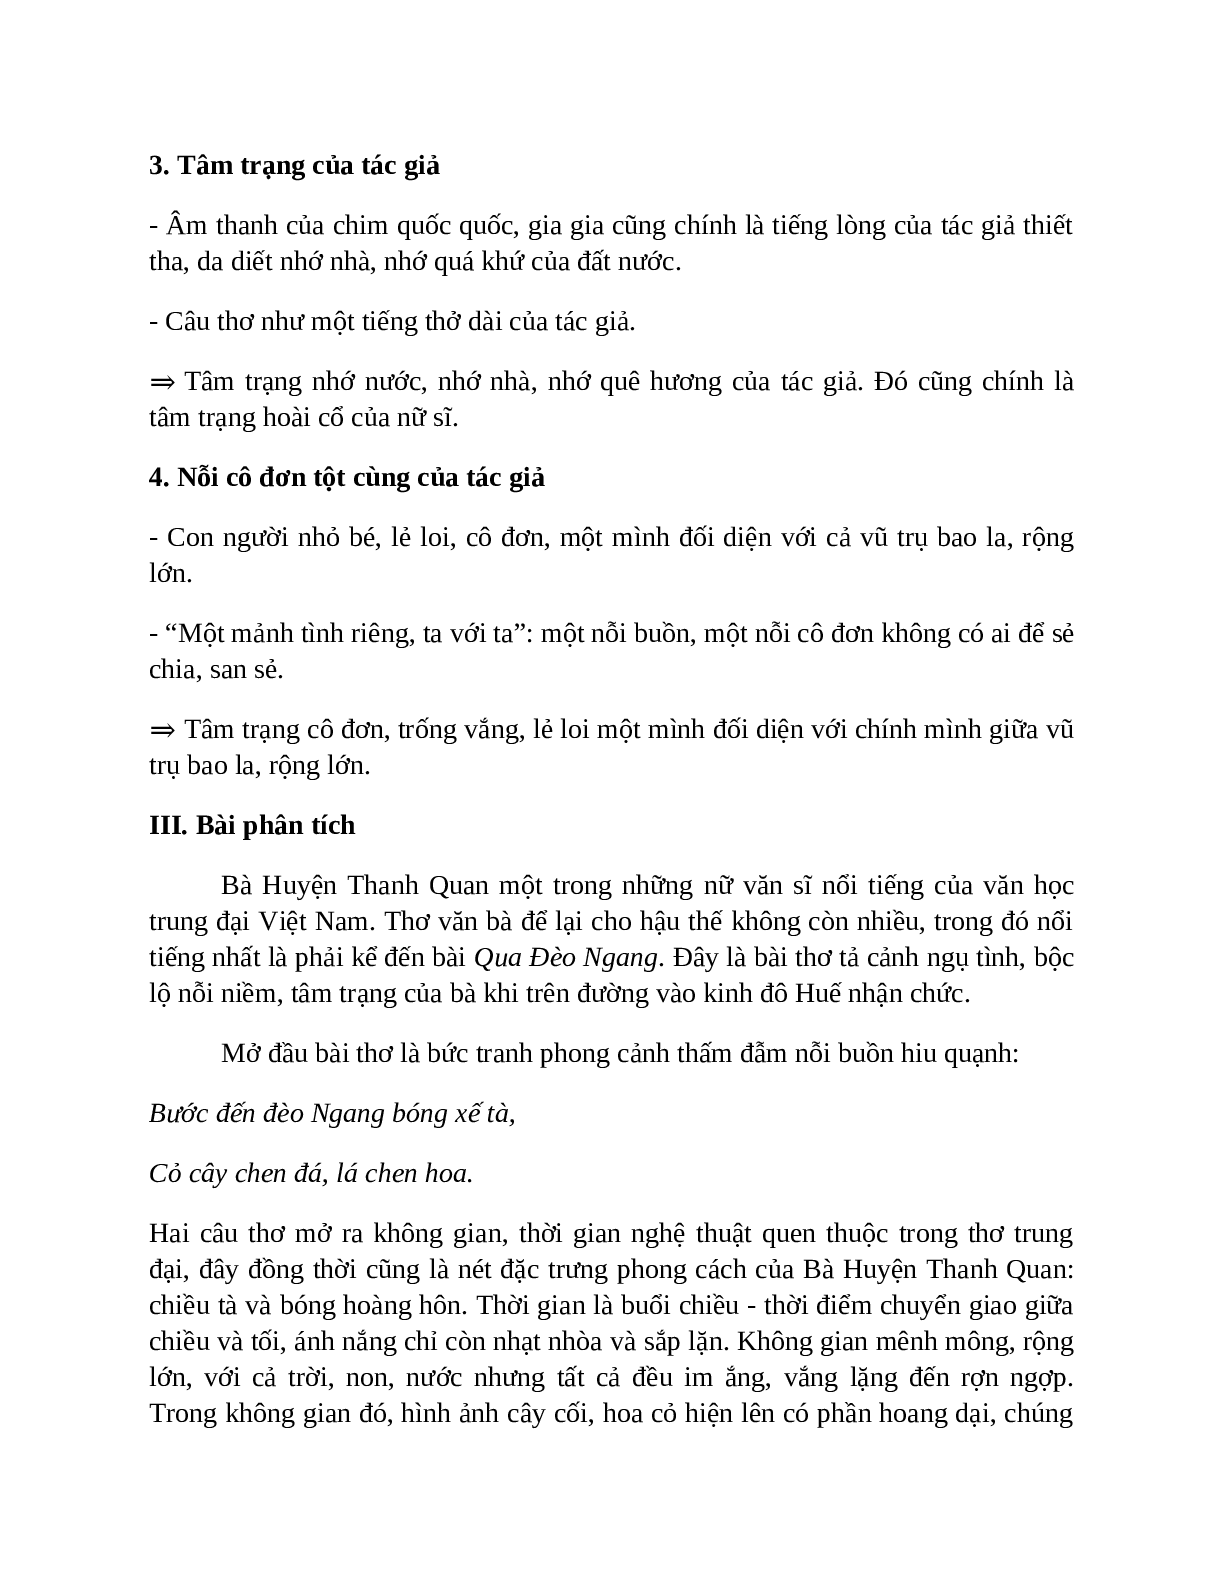 Sơ đồ tư duy bài Qua đèo ngang dễ nhớ, ngắn nhất - Ngữ văn lớp 7 (trang 4)